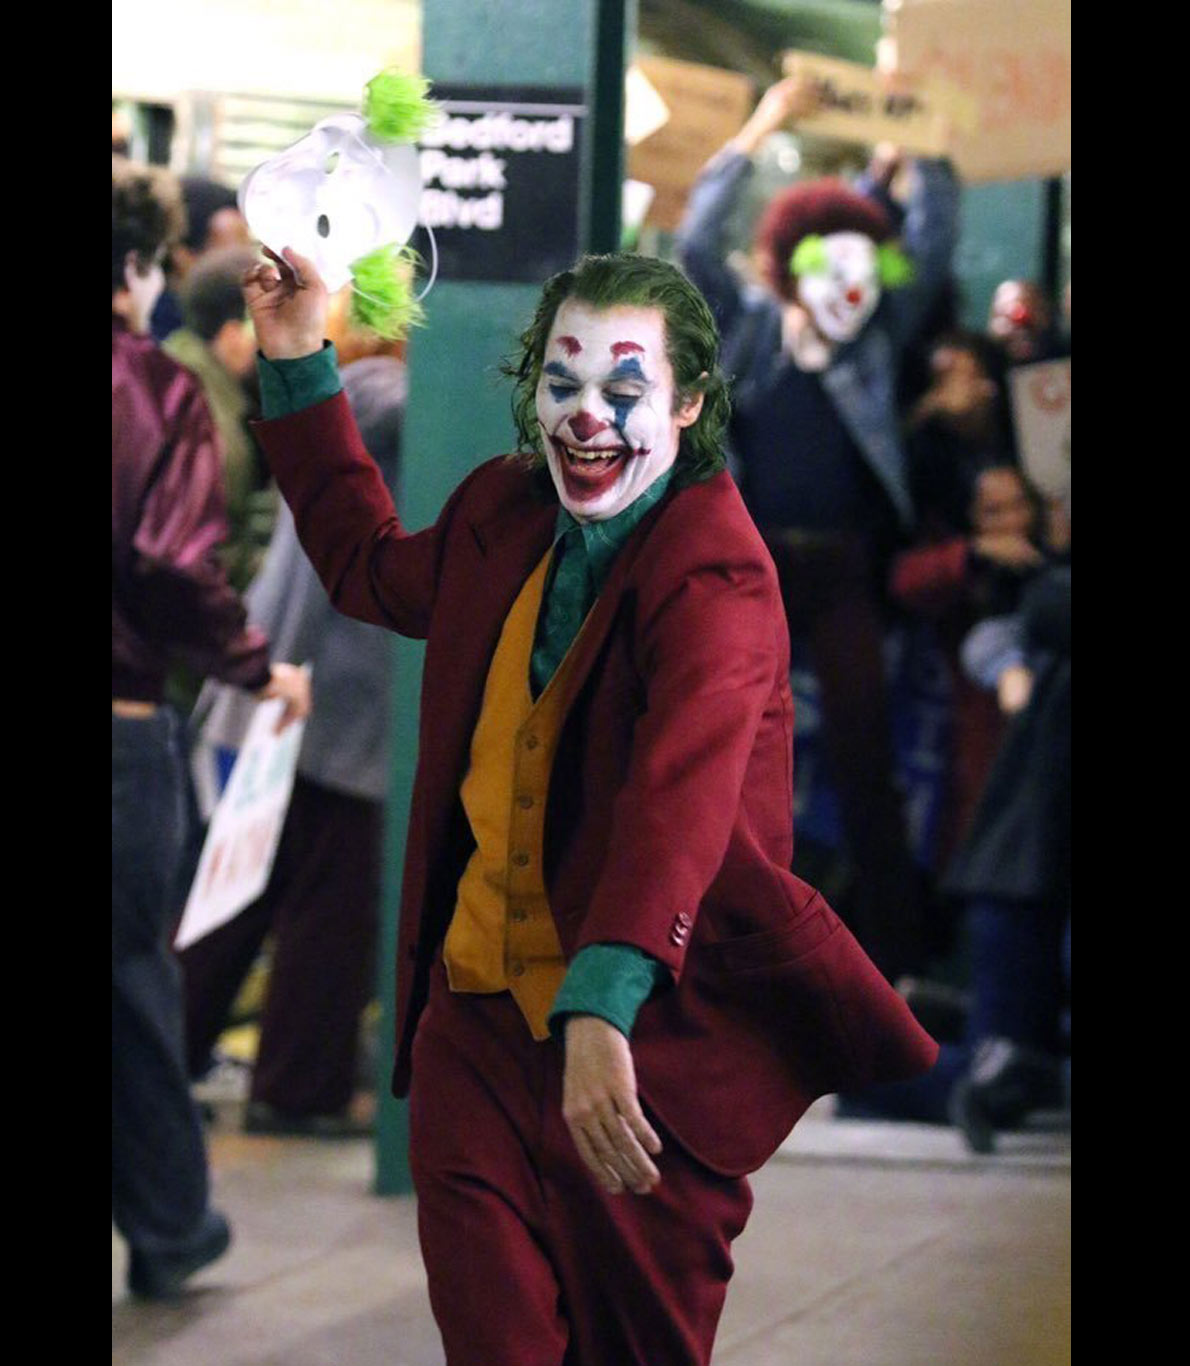 Fotografia do set do filme “Joker”. Nesta fotografia, o ator que representa a personagem Joker, Joaquin Phoenix, aparece já caraterizado, vestido e pintado de palhaço, rindo e segurando uma máscara.